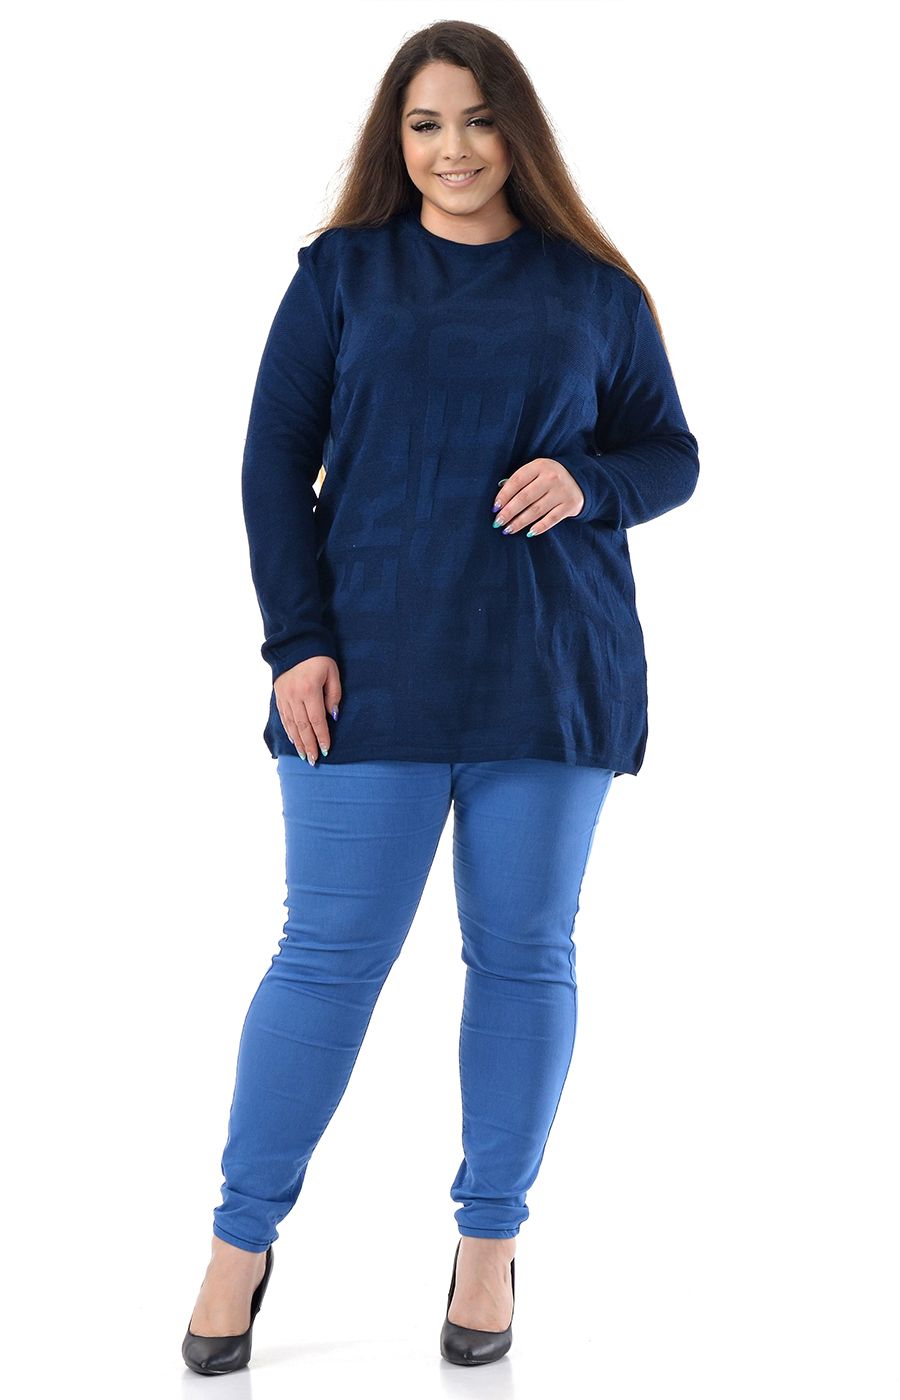 Джемпер тёмно-синий женский большого размера